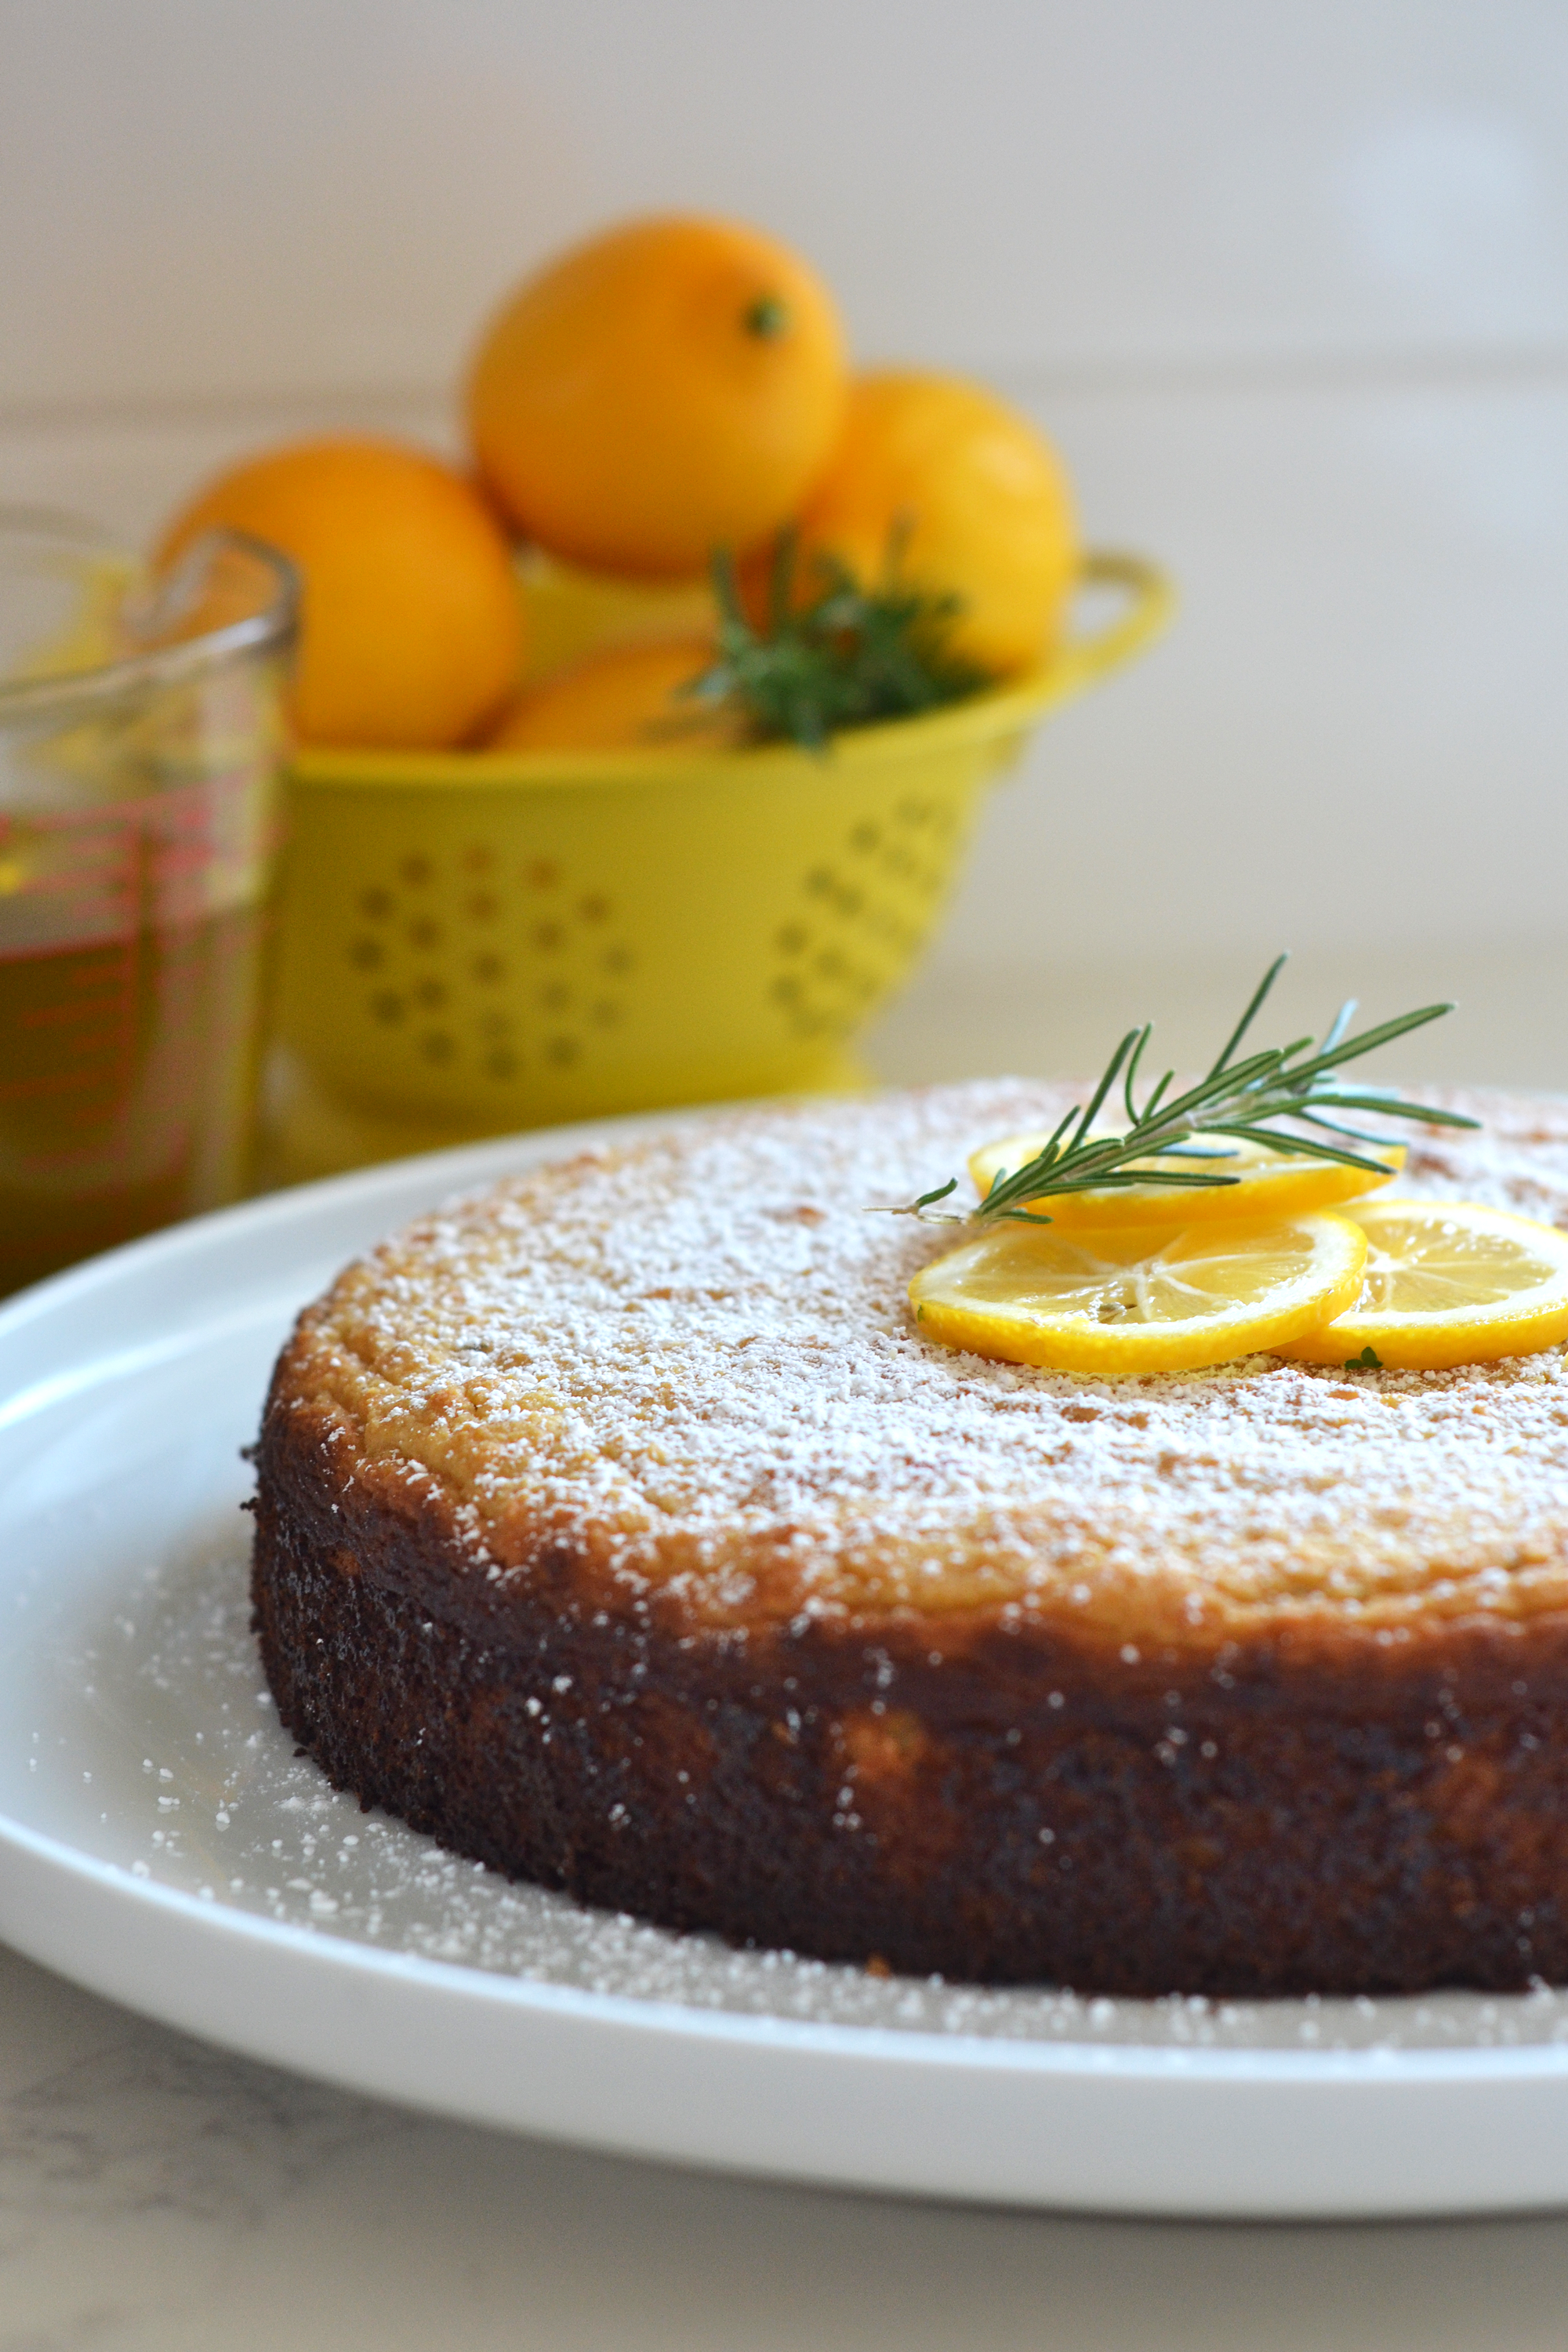 denne Rosemary Meyer citron olivenolie kage er Korn Fri, raffineret sukker fri og mejeri fri aka-Paleo! Det har sådan en fabelagtig smag og er perfekt til enhver fest eller brunch!